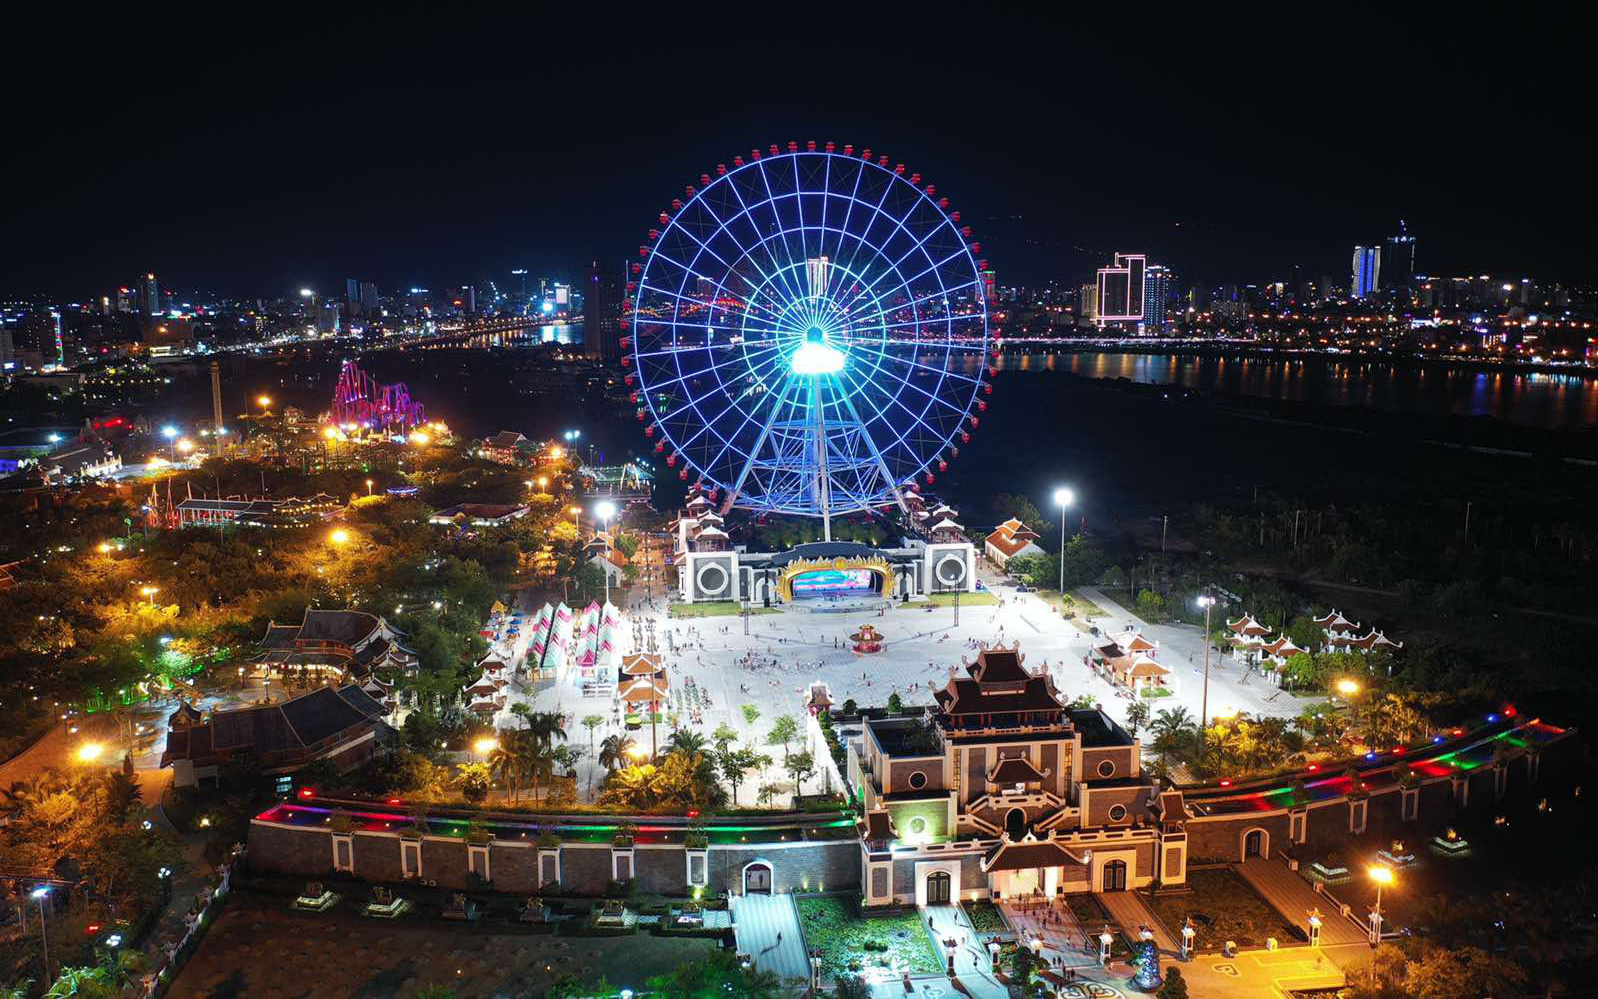 Tết Tân Sửu, Công viên Châu Á - Asia Park sẽ bùng nổ với chuỗi đêm nhạc và lễ hội hoành tráng